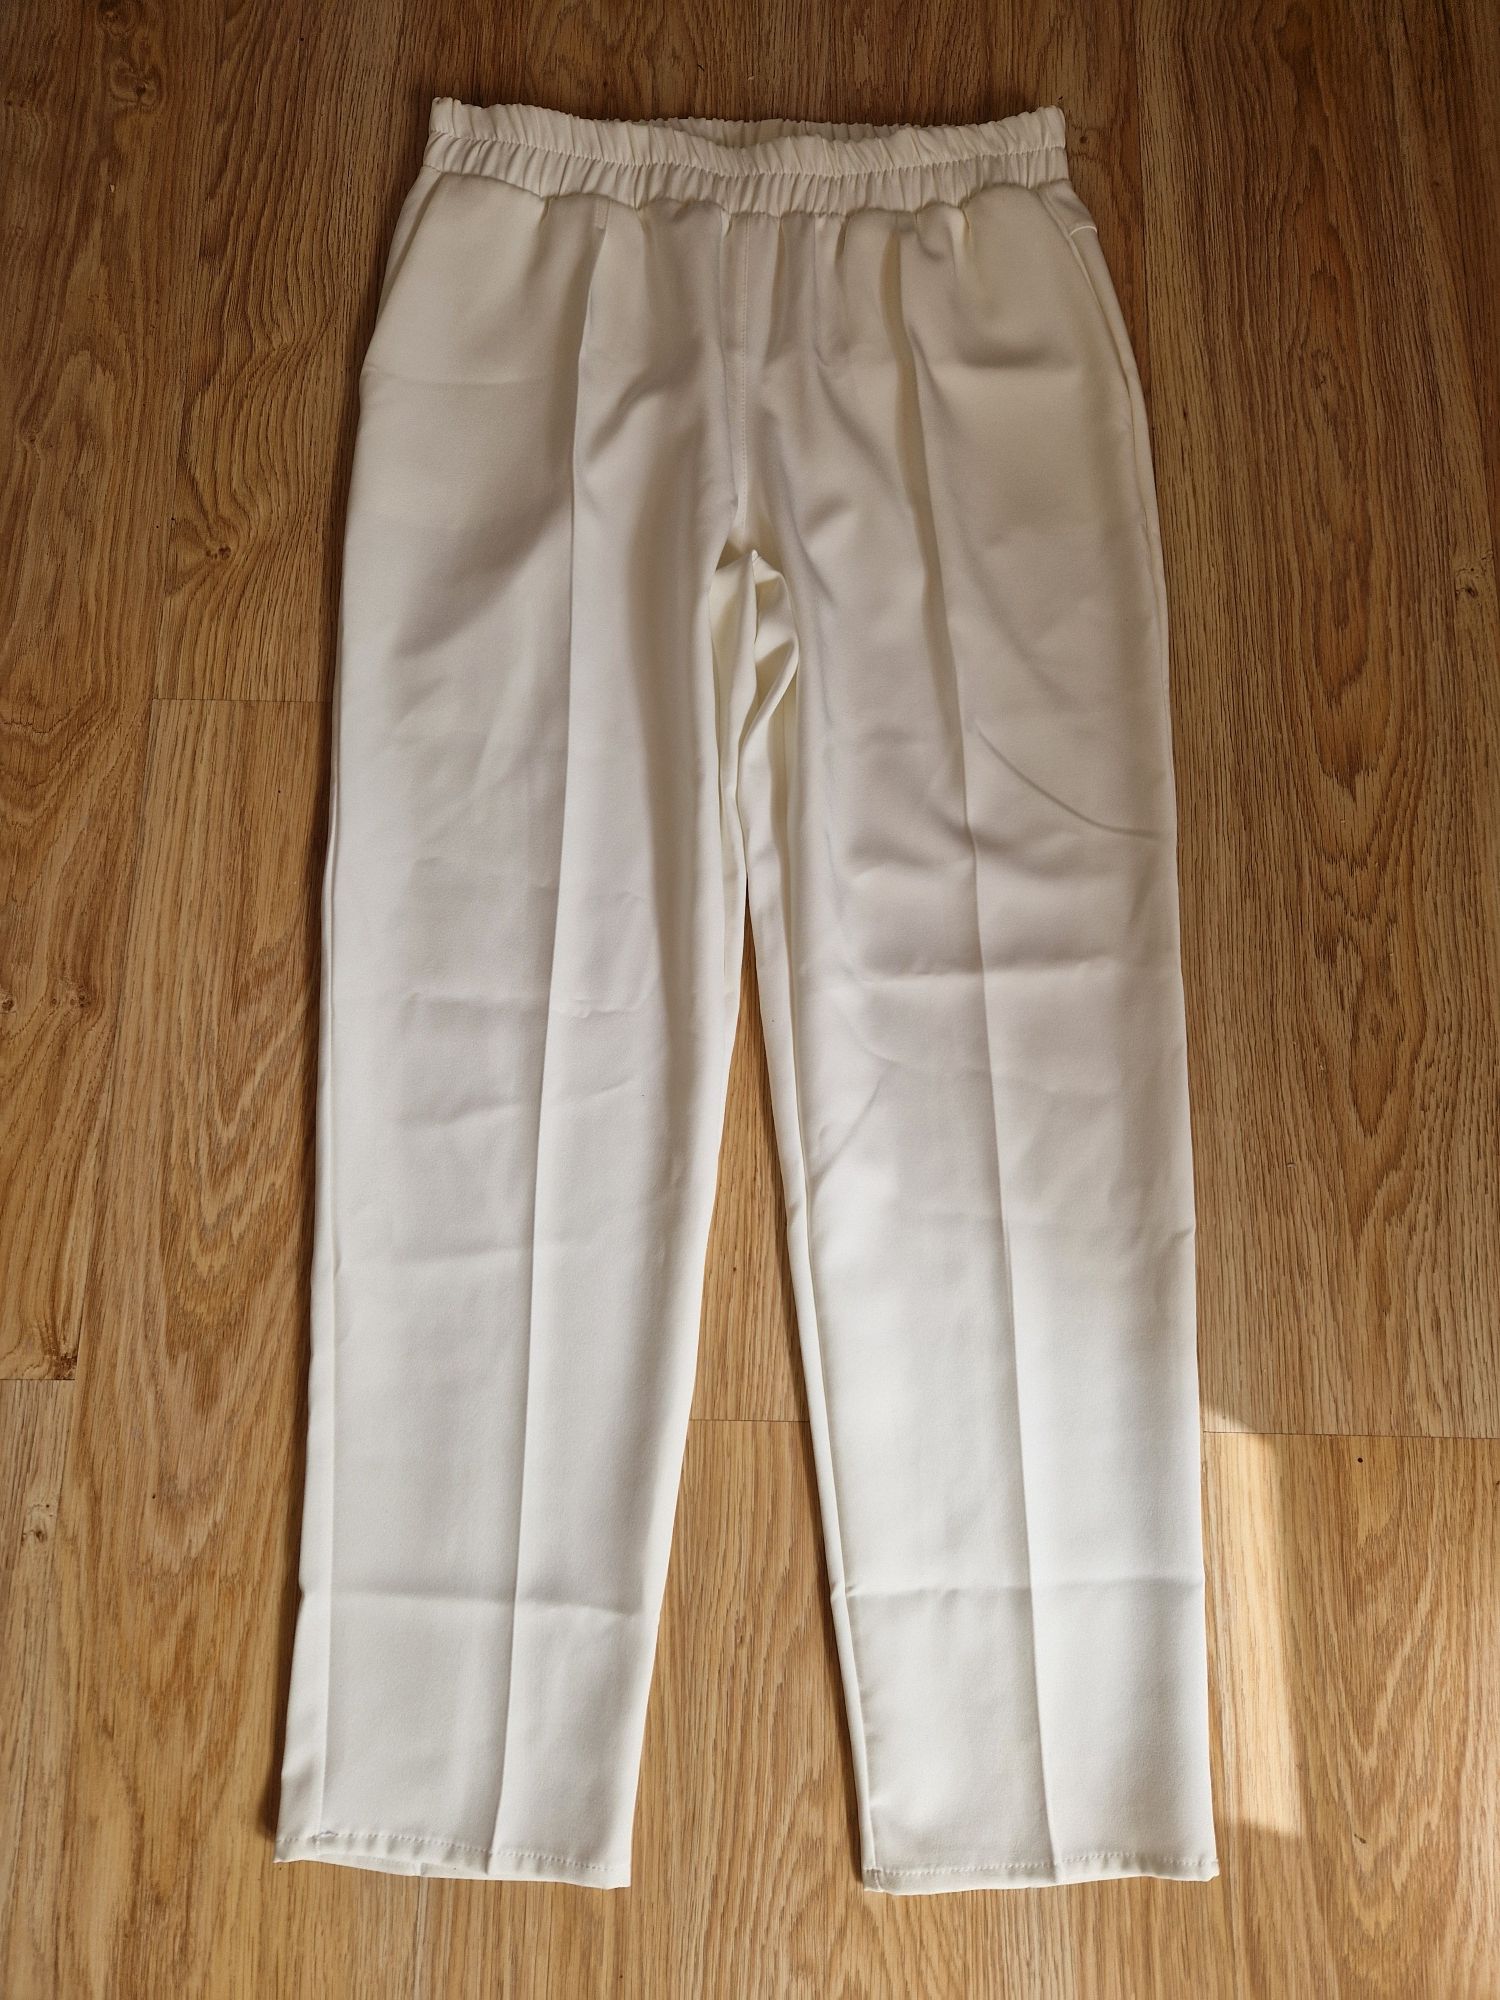 Białe eleganckie spodnie,, rozm 42, ROSETTO